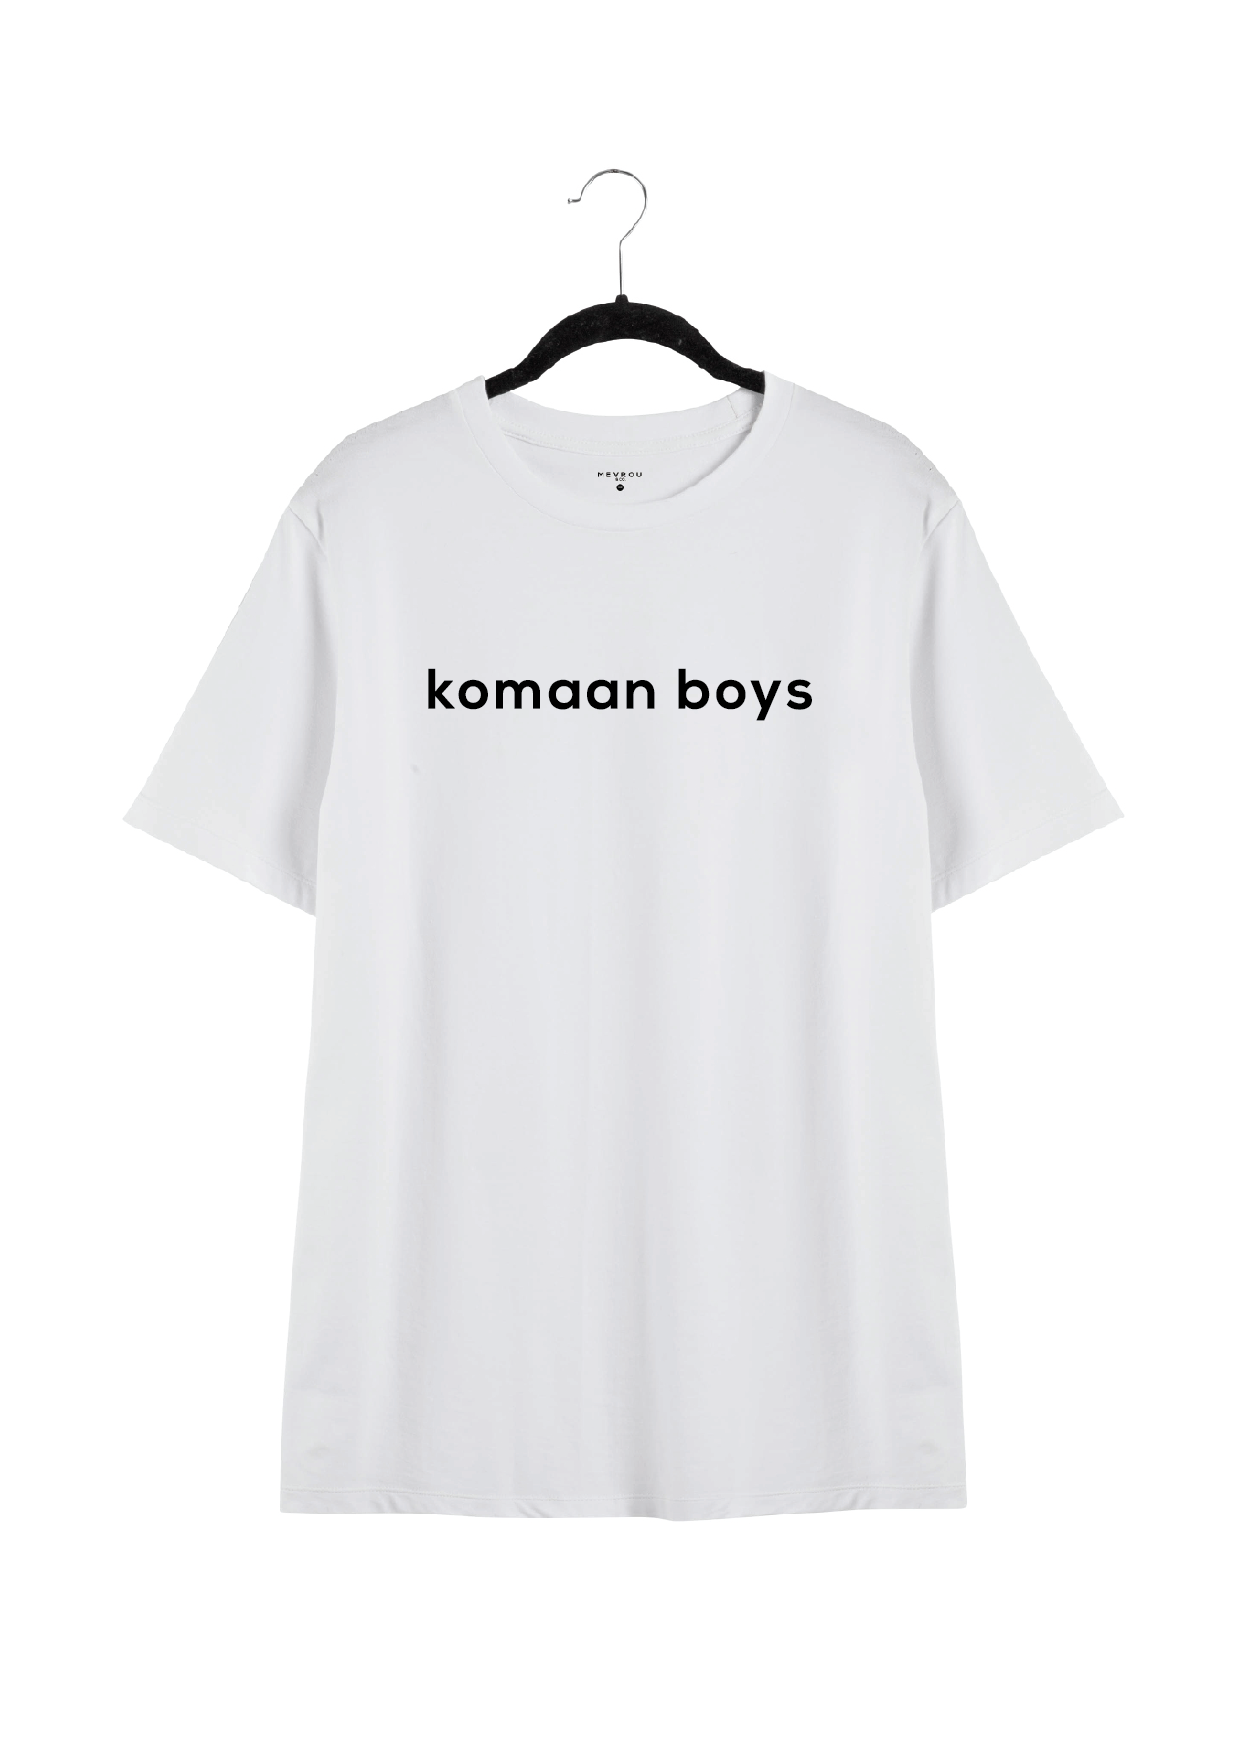 KOMAAN BOYS TEE